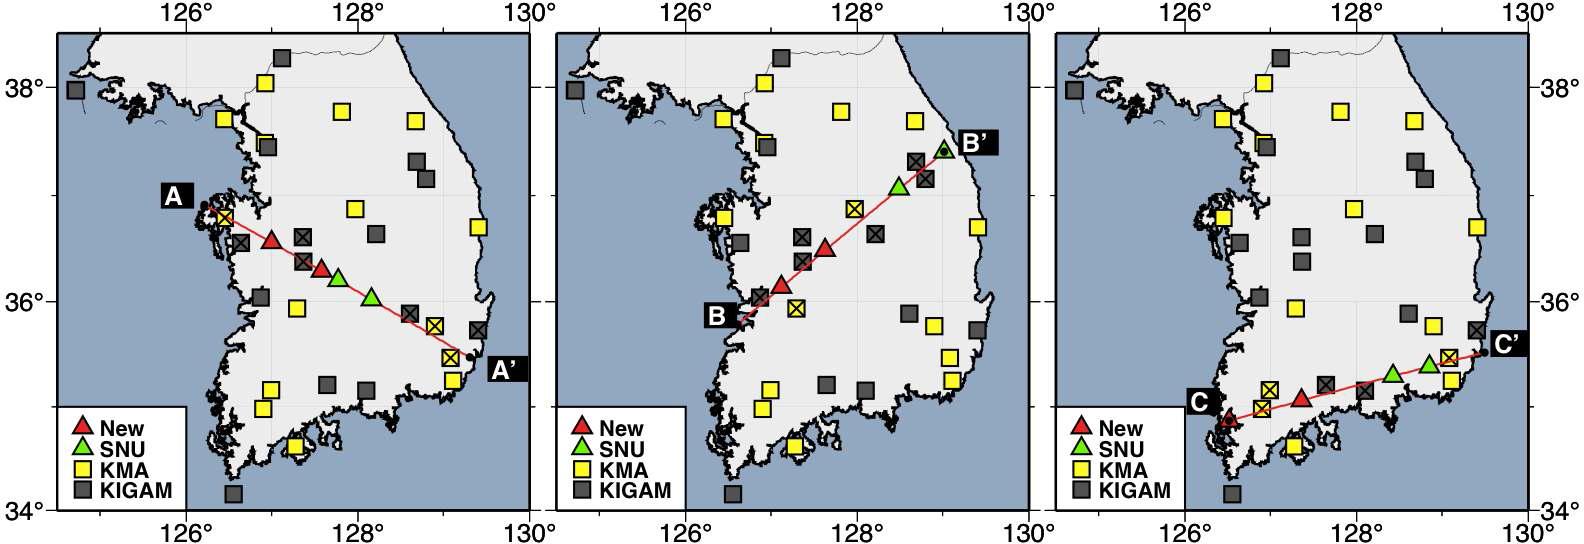 본 연구에서 제안하는 프로파일 (A-A’, B-B’, C-C’)을 붉은 색 선으로 표시하였다. 프로파일 A-A’는 선행된 굴절파 탐사(KCRST2002, [Cho et al., 2006])의 프로파일 인근에 위치한다. 녹색으로 표시된 두 개의 지진계(SNU)는 본 연구 과제로 확보한 것으로 제안된 로드맵에 활용가능하다. 현재 운영 중인 지진계(KMA, KIGAM)들 중에 제안된 프로파일에서 20 km 이내 거리에 위치한 지진계를‘x’로 표시하였다.